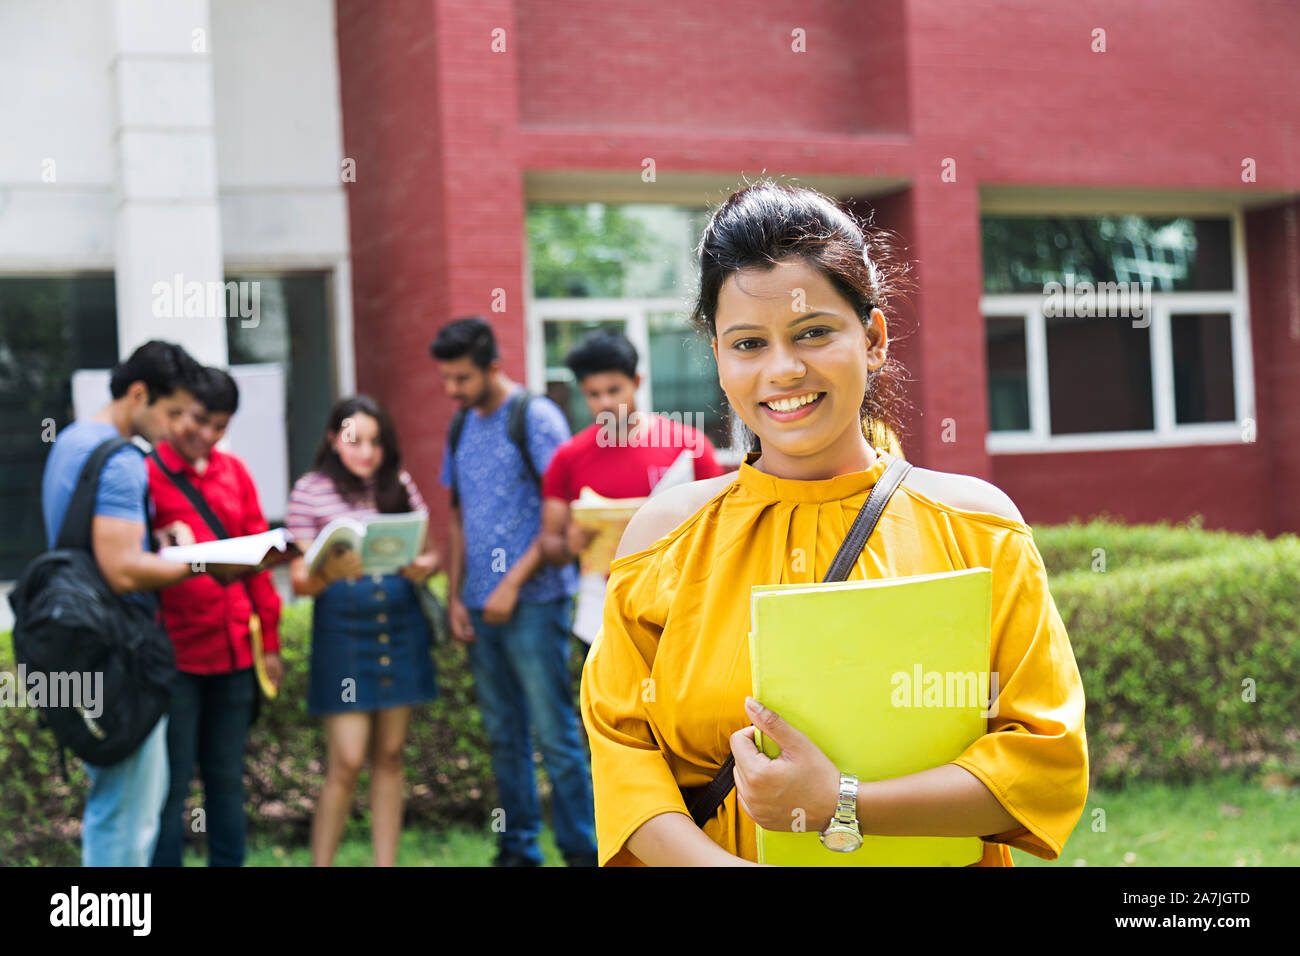 Glückliche junge weibliche Studenten Holding Buch, während Mitschüler Im-ohr-Hintergrund außerhalb des Campus Gebäude Stockfoto